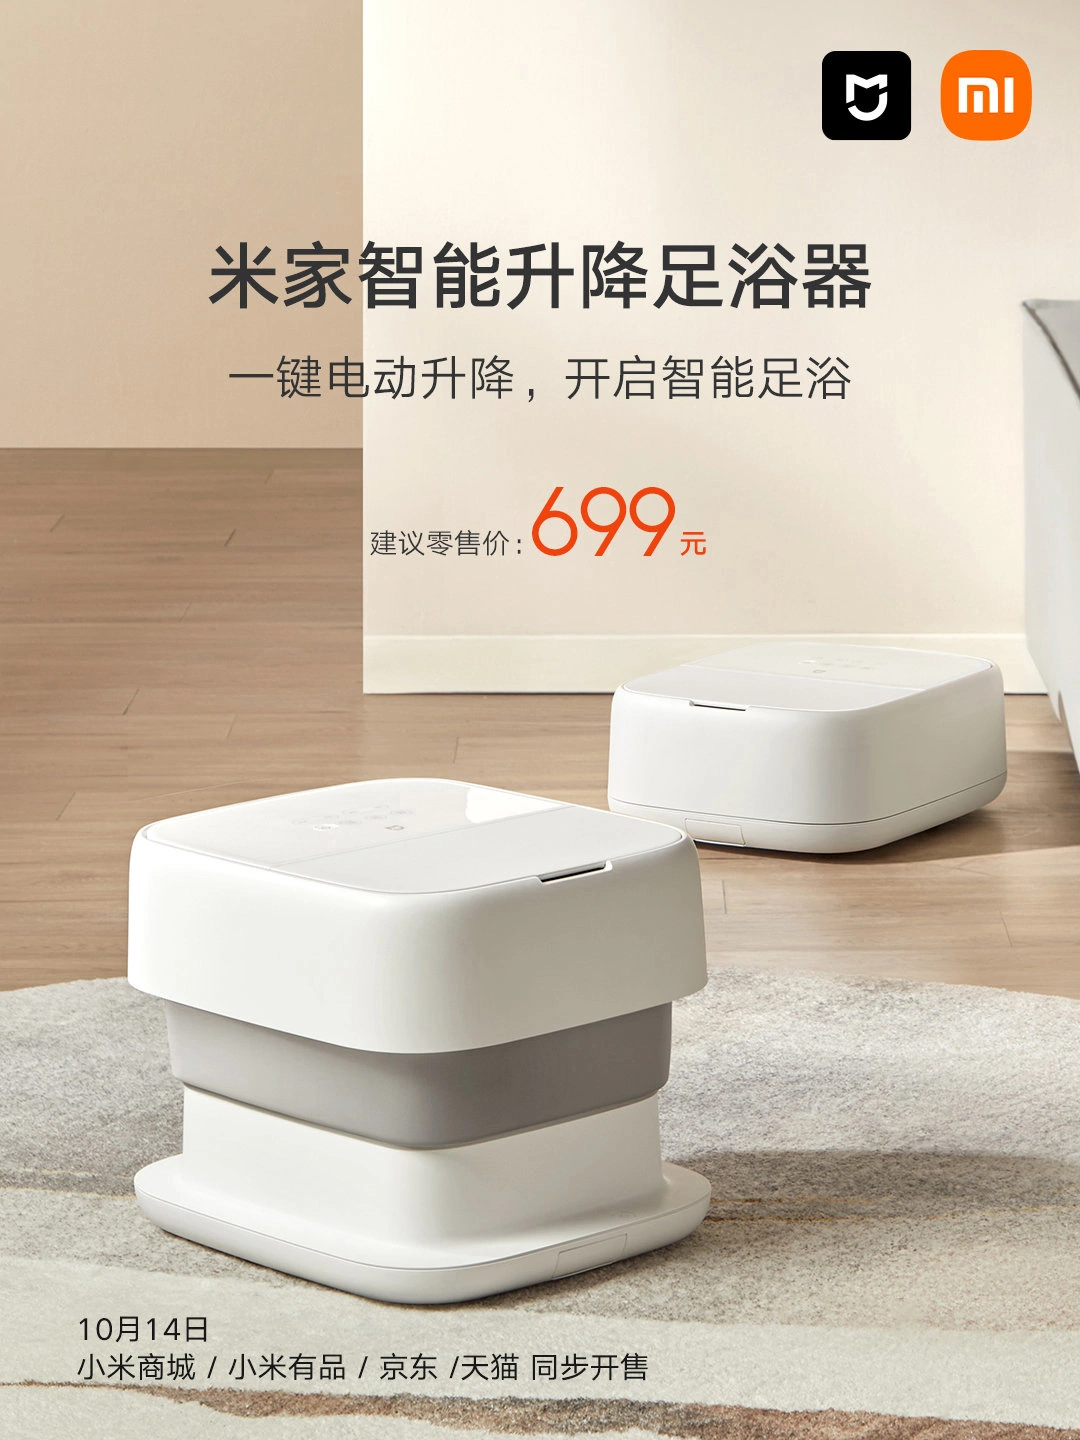 小米推出米家智能升降足浴器，售價699元